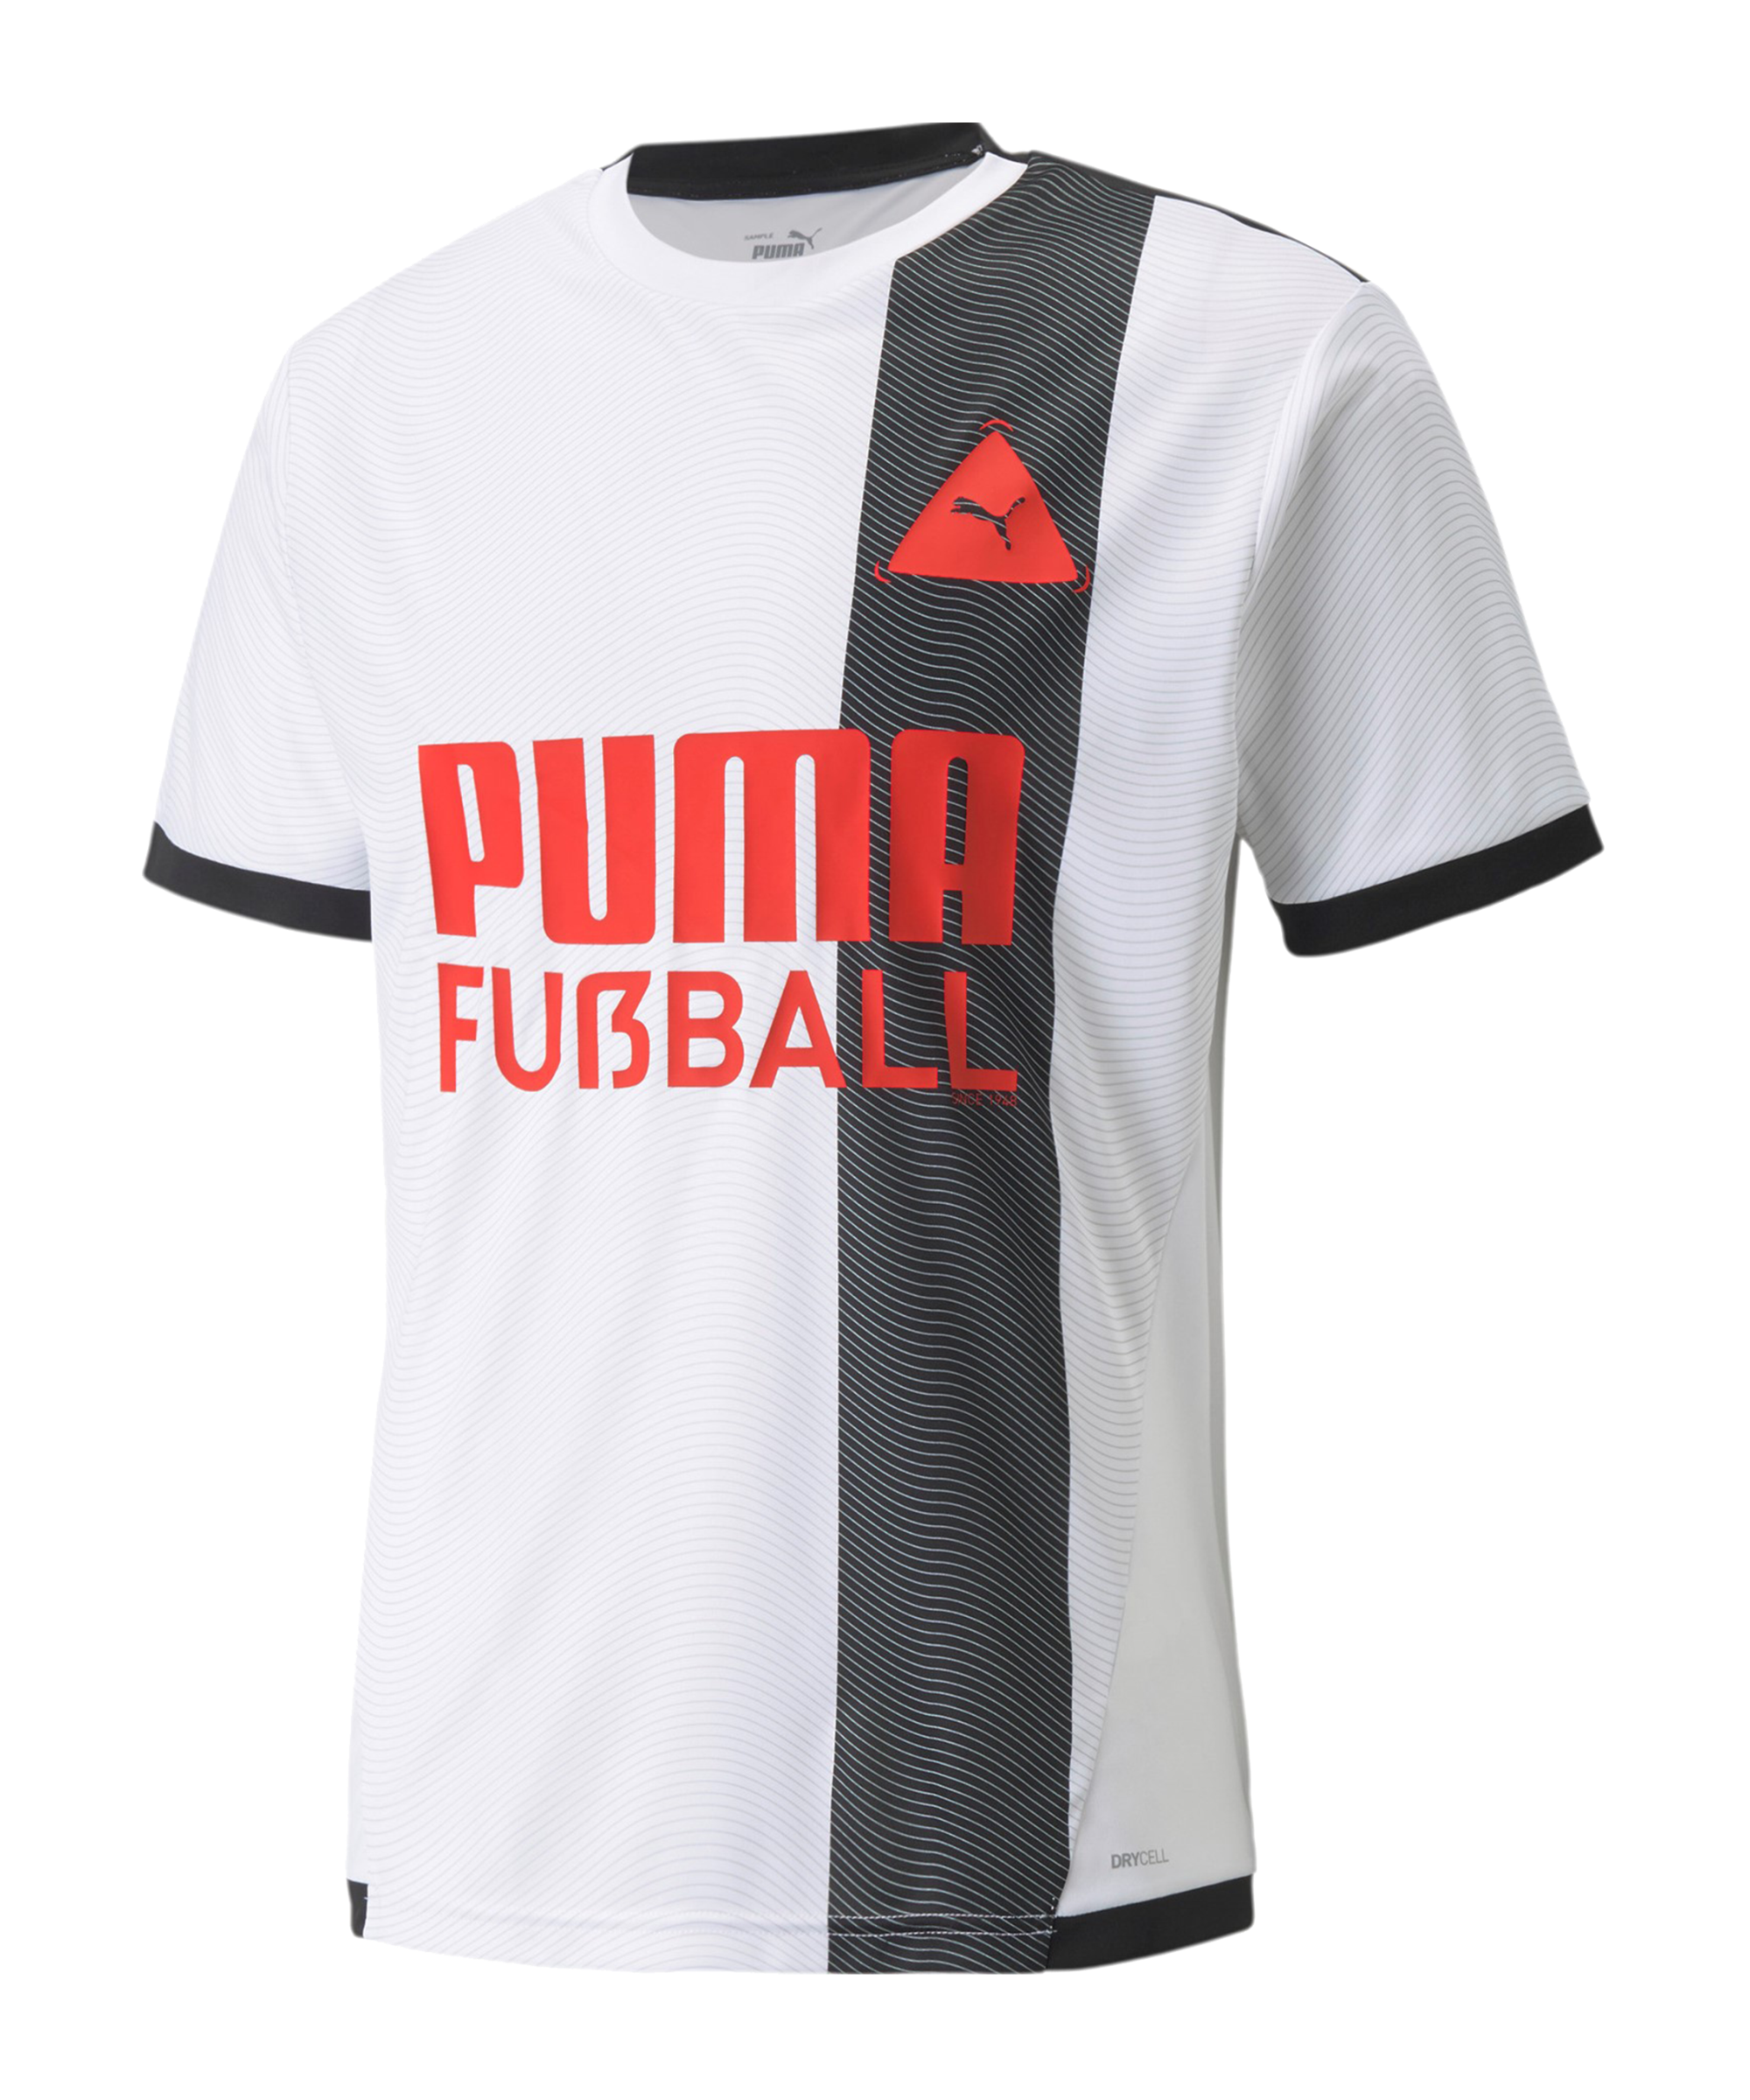 Pánský tréninkový dres s krátkým rukávem Puma FUßBALL PARK